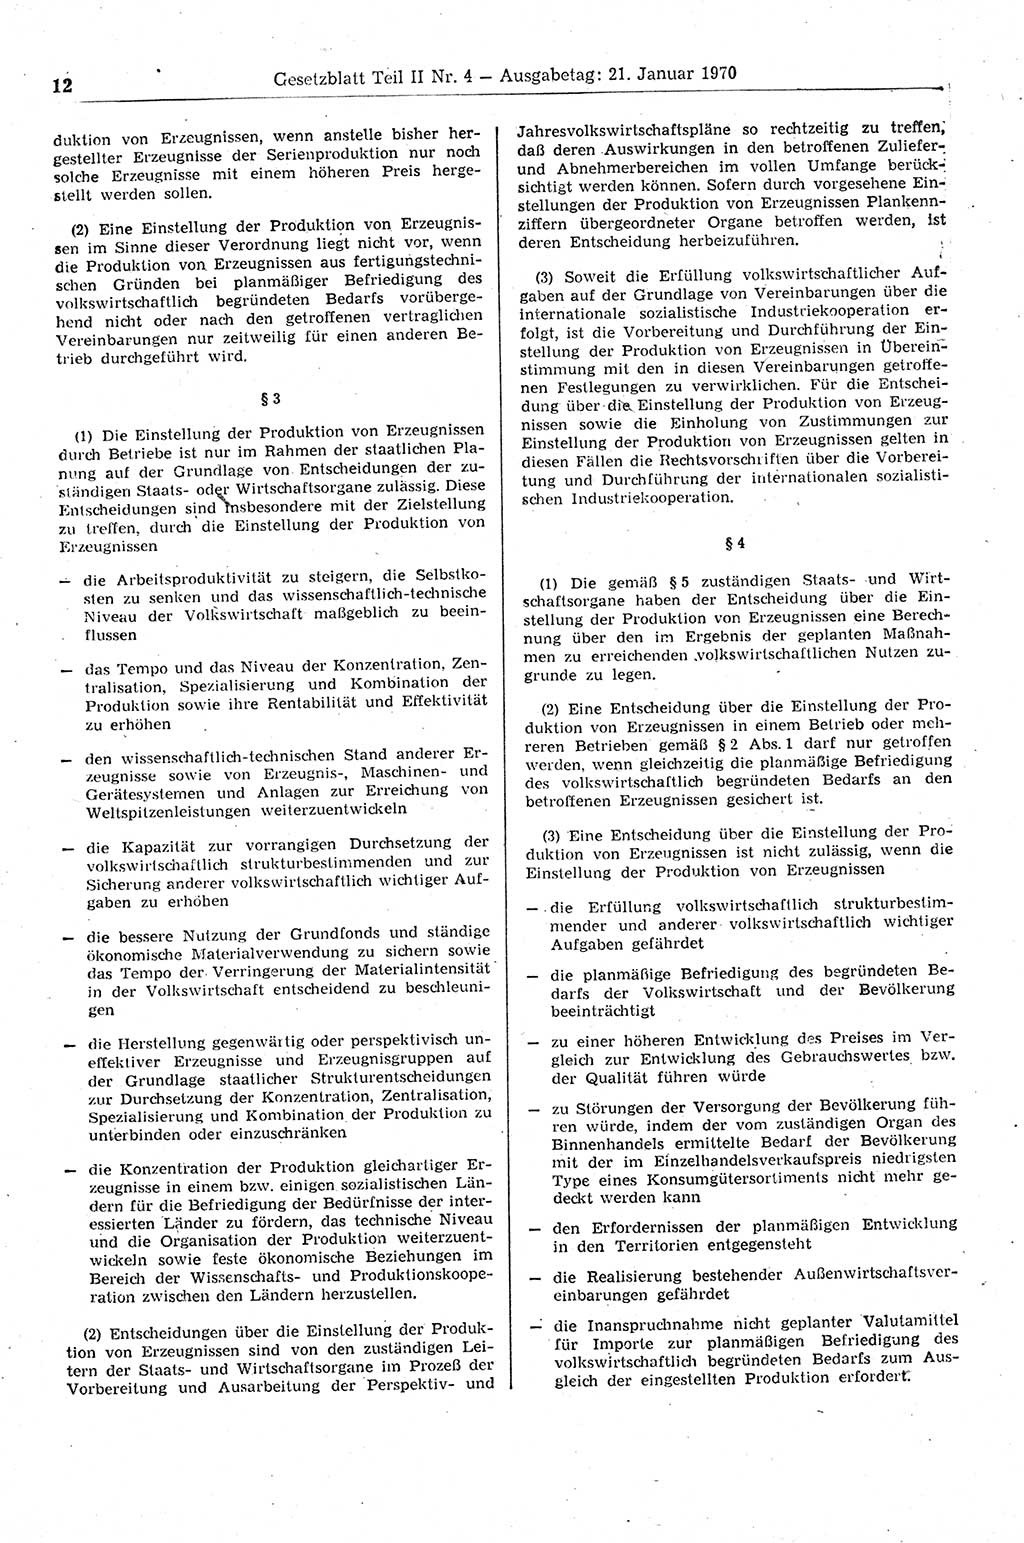 Gesetzblatt (GBl.) der Deutschen Demokratischen Republik (DDR) Teil ⅠⅠ 1970, Seite 12 (GBl. DDR ⅠⅠ 1970, S. 12)